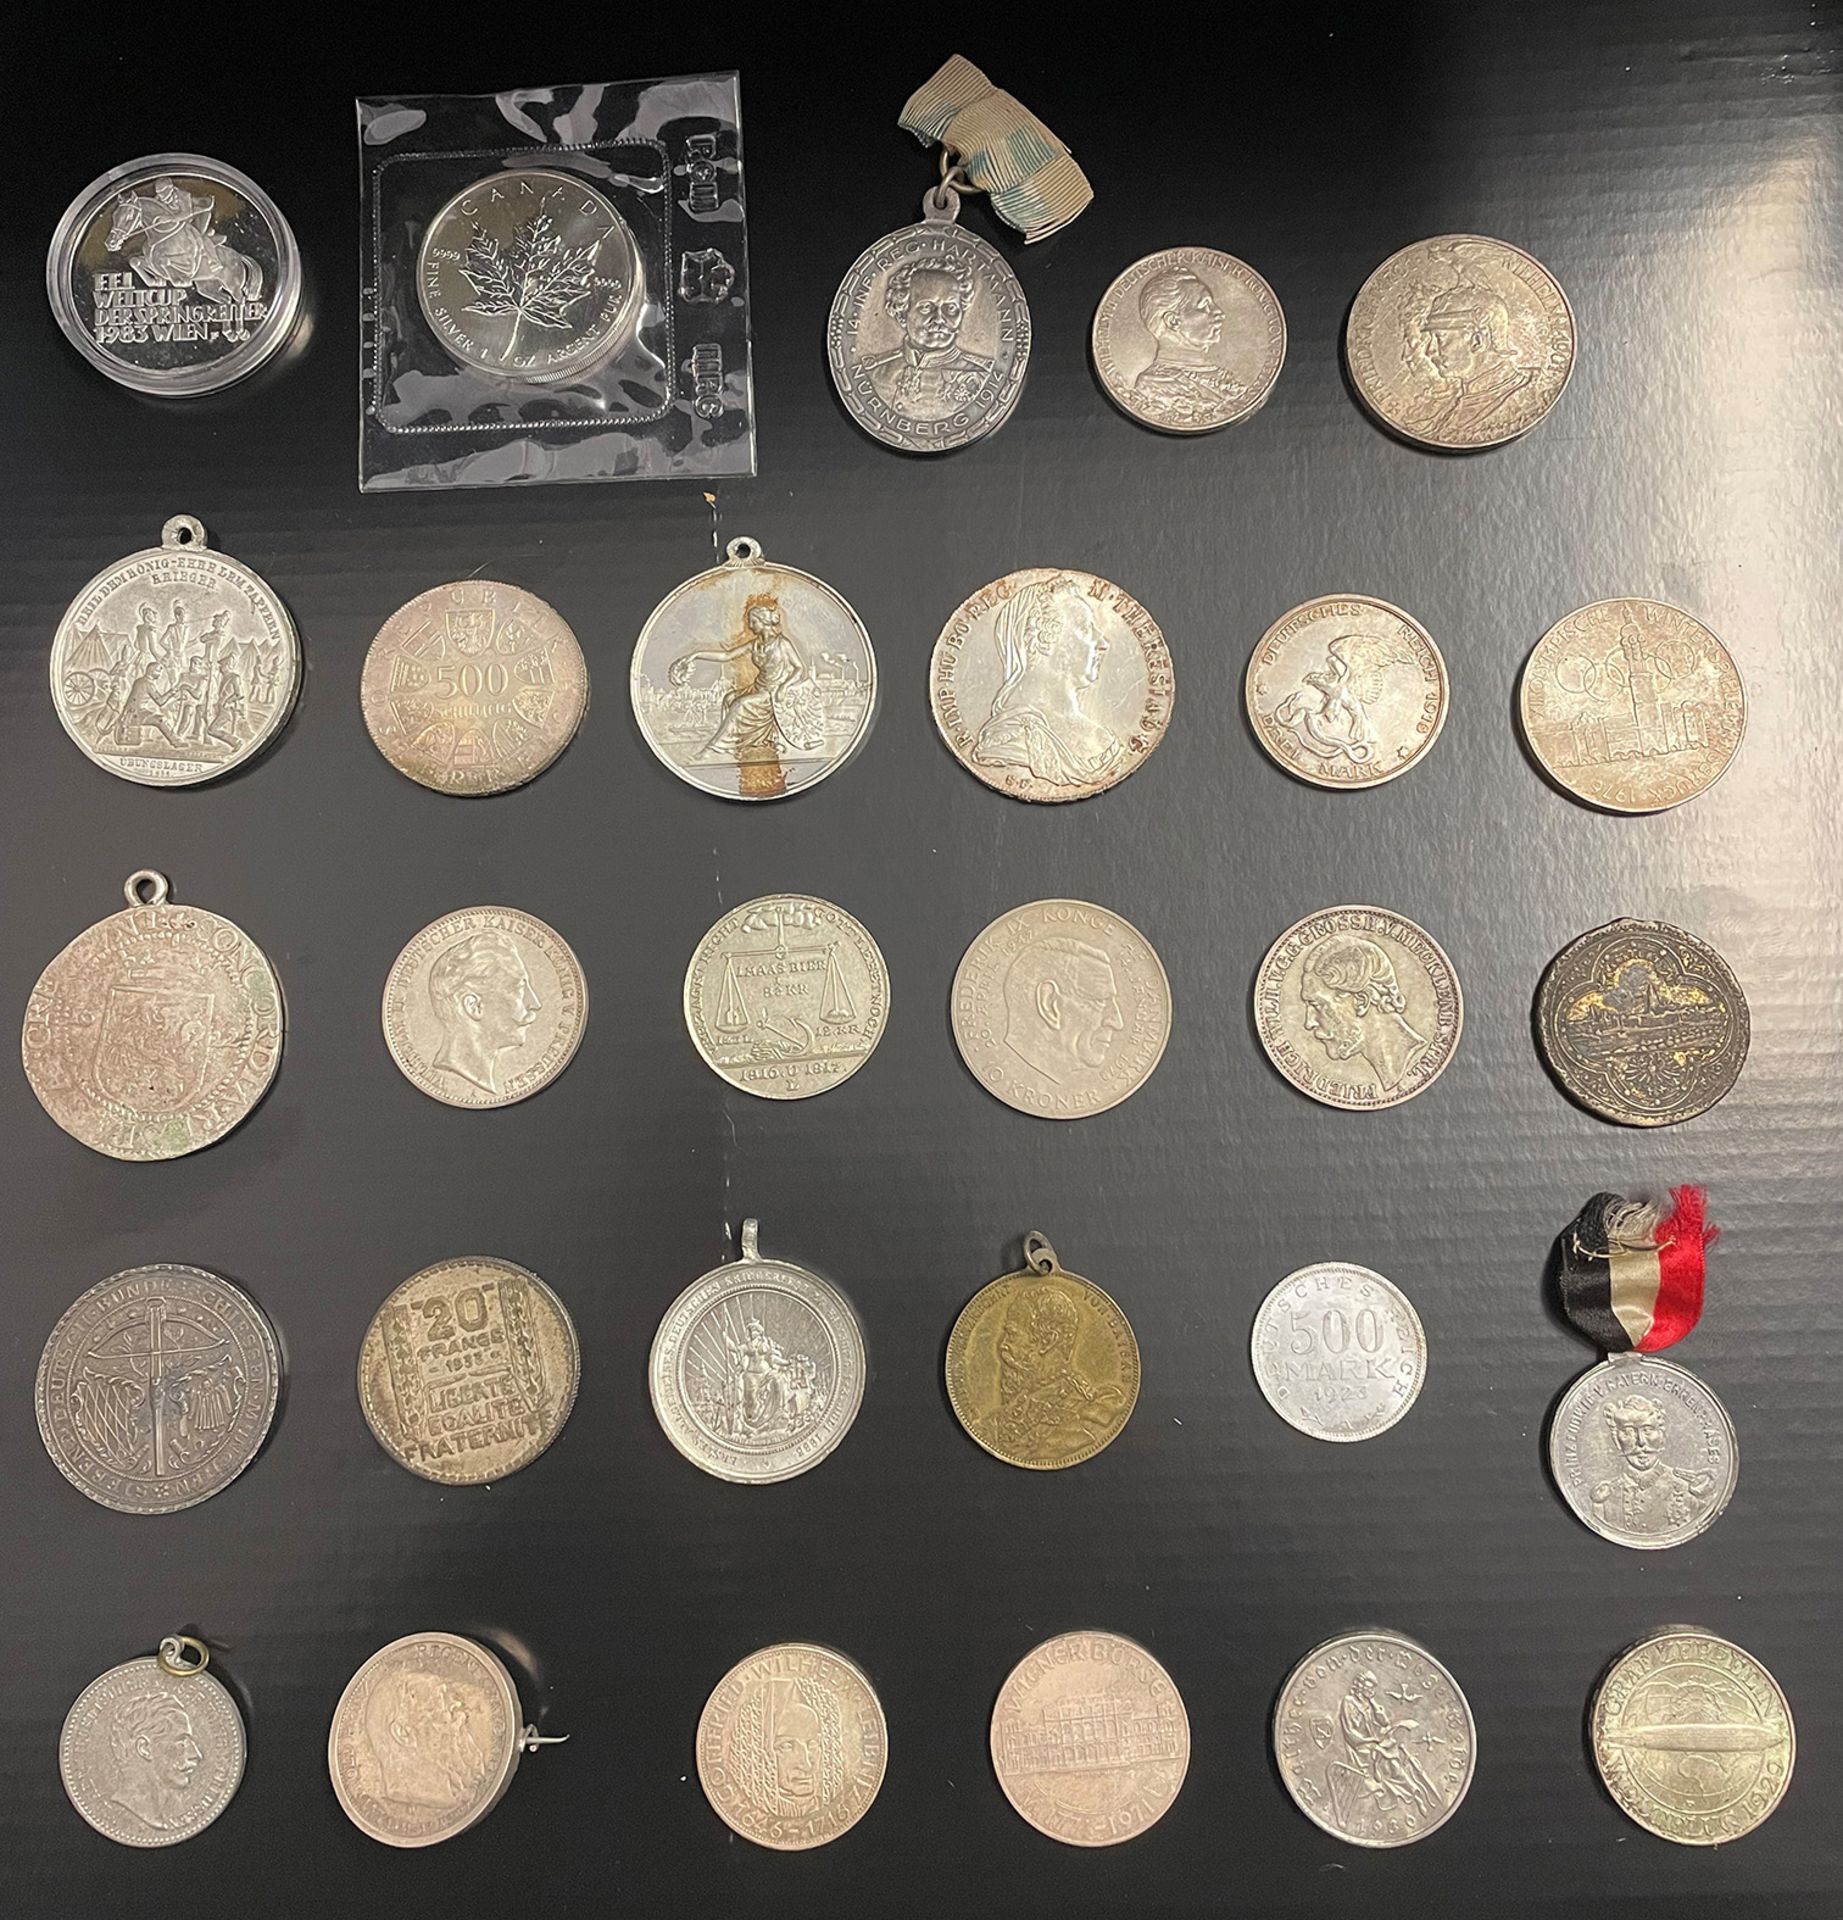 Konvolut Münzen, Medaillen, Münzanhänger, Sammlungsauflösung, darunter: 1 x 5 Dollar 1988, Canada, - Image 15 of 26